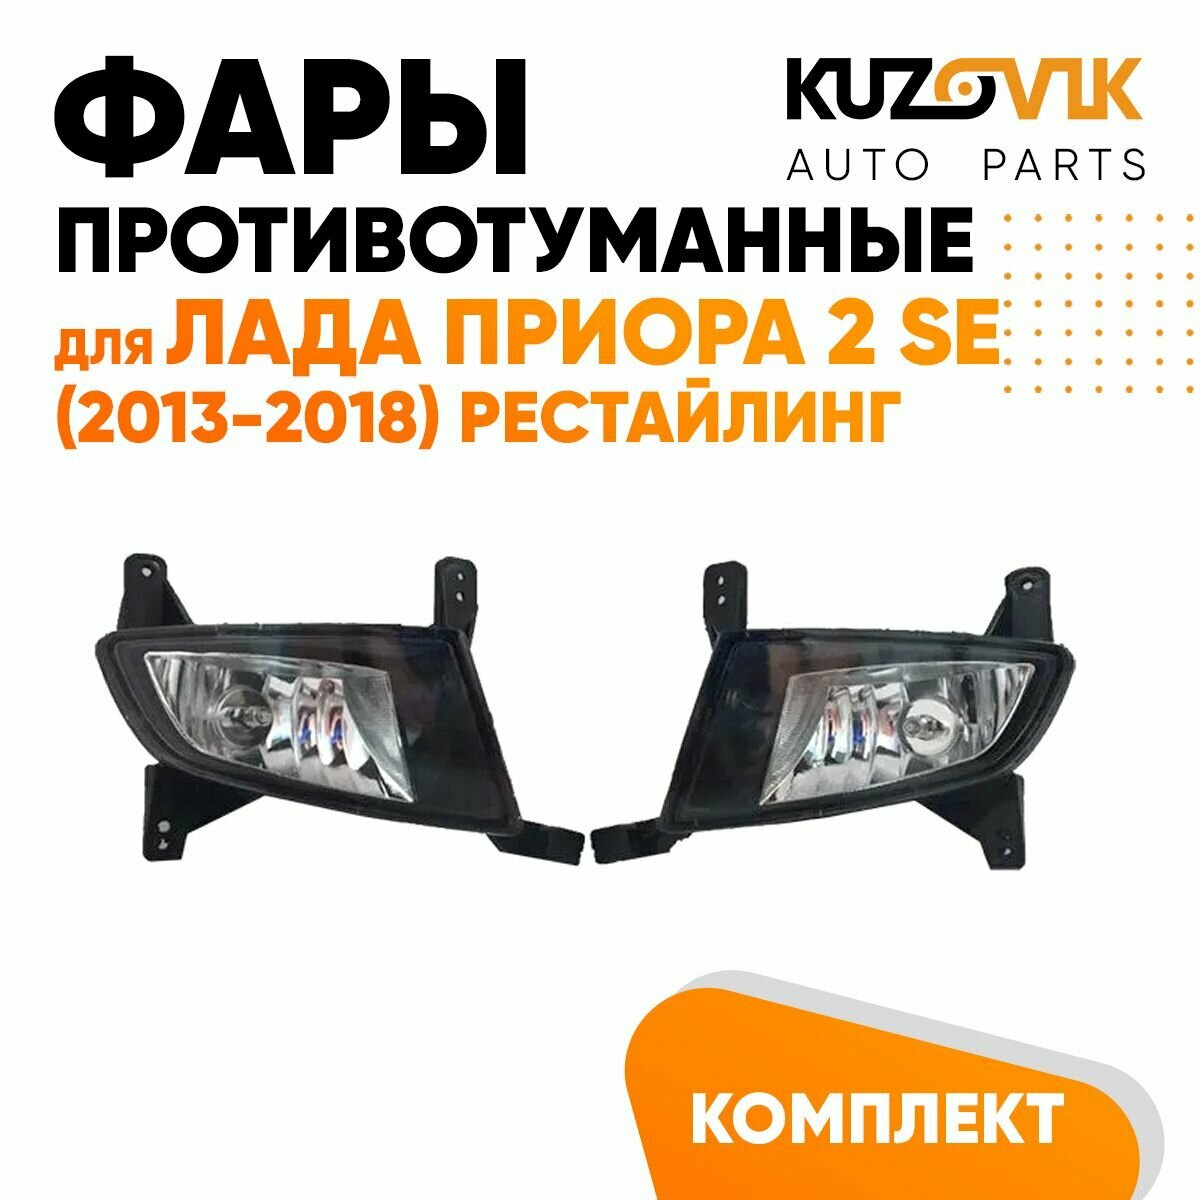 Фары противотуманные для Лада Приора 2 SE (2013-2018) рестайлинг с рамками и лампами комплект 2 штуки